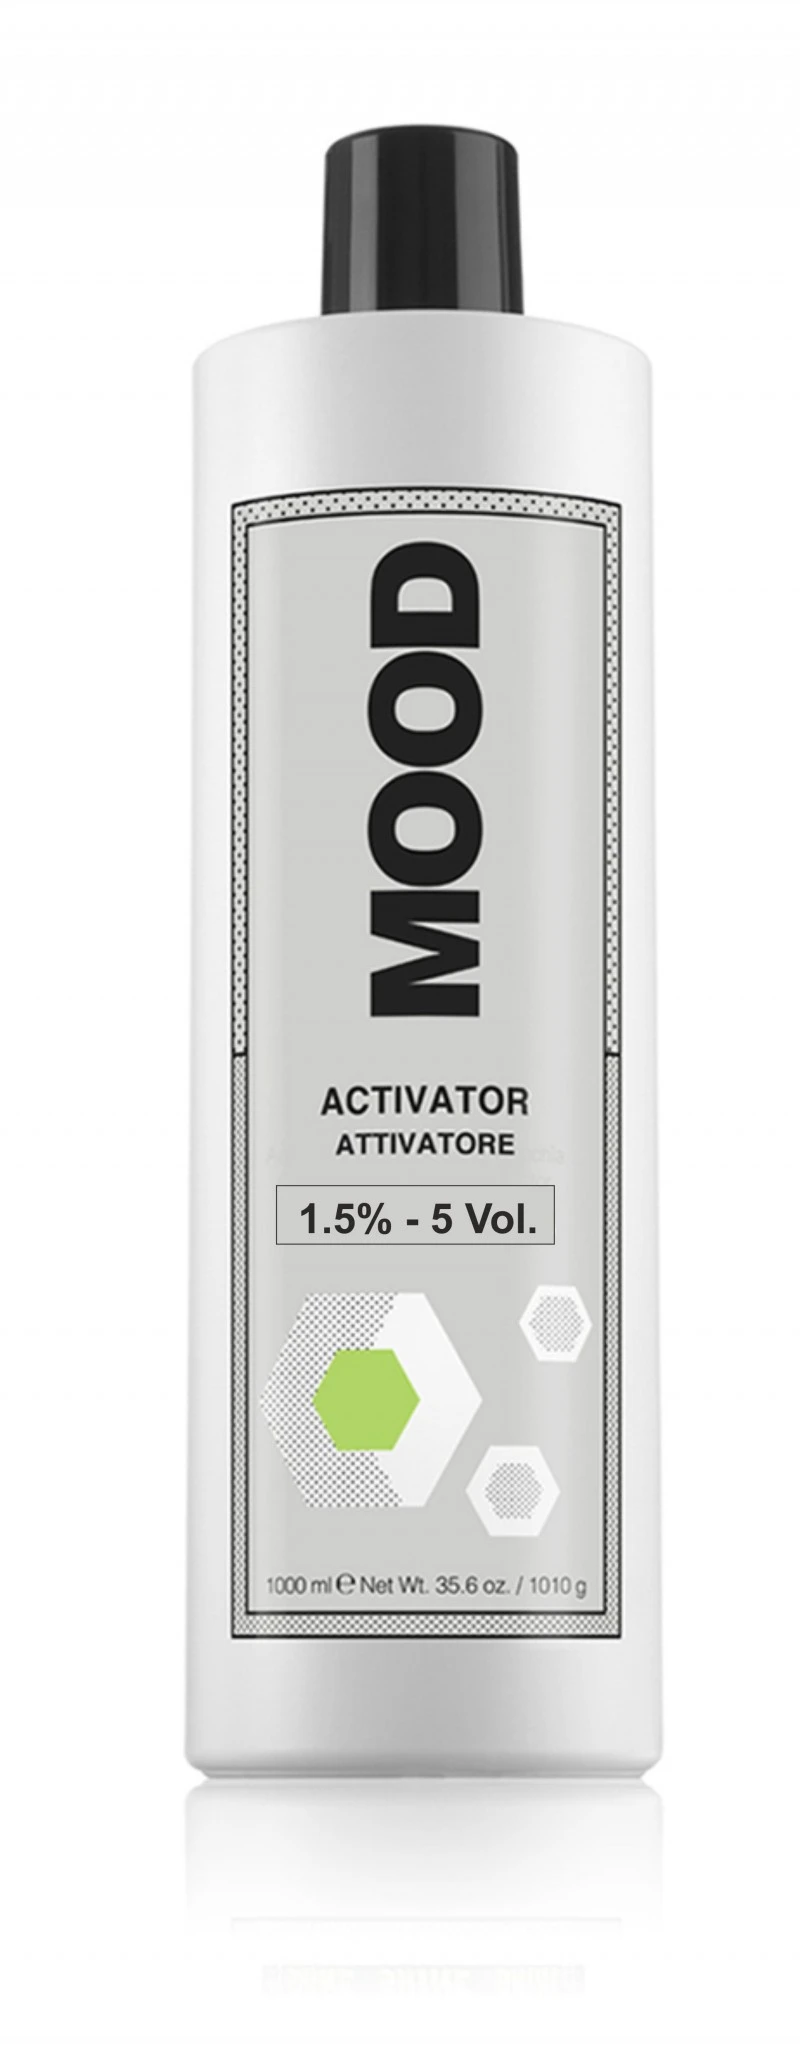 MOOD Activator 1 L, 1.5%